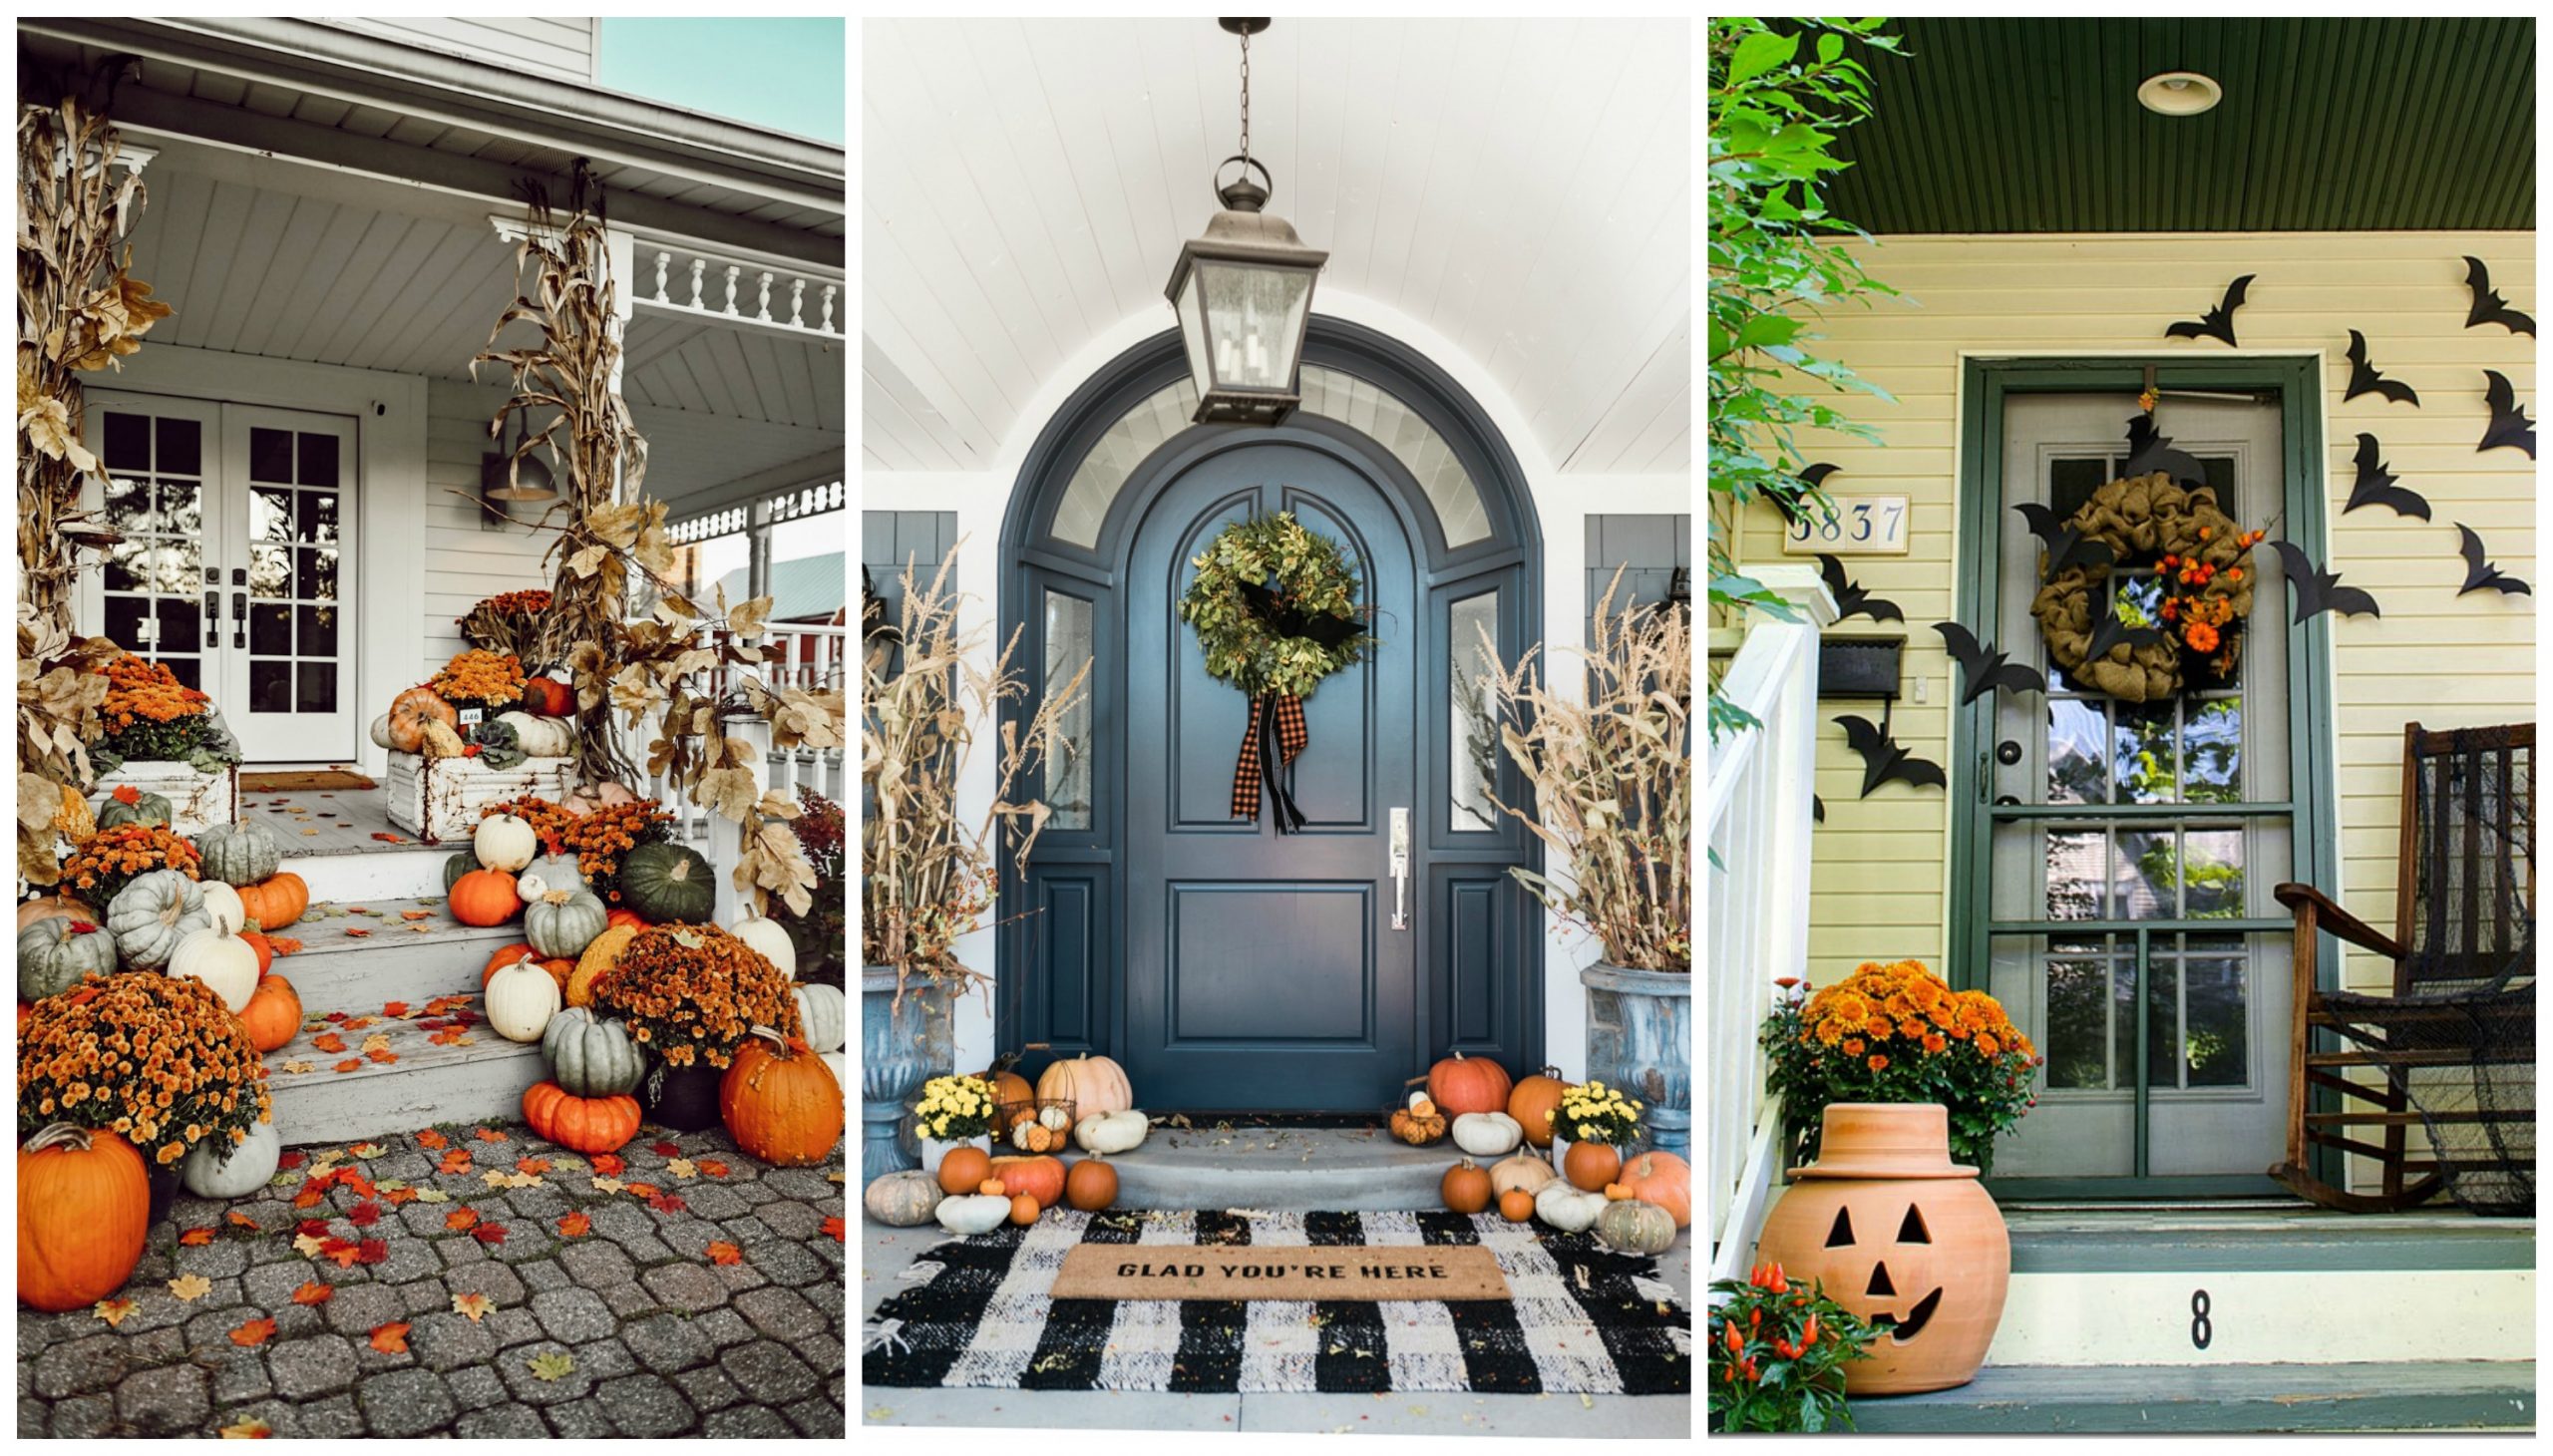 9 Ideas For Fall Front Porch Decor, Outdoor Porch Decor Fall